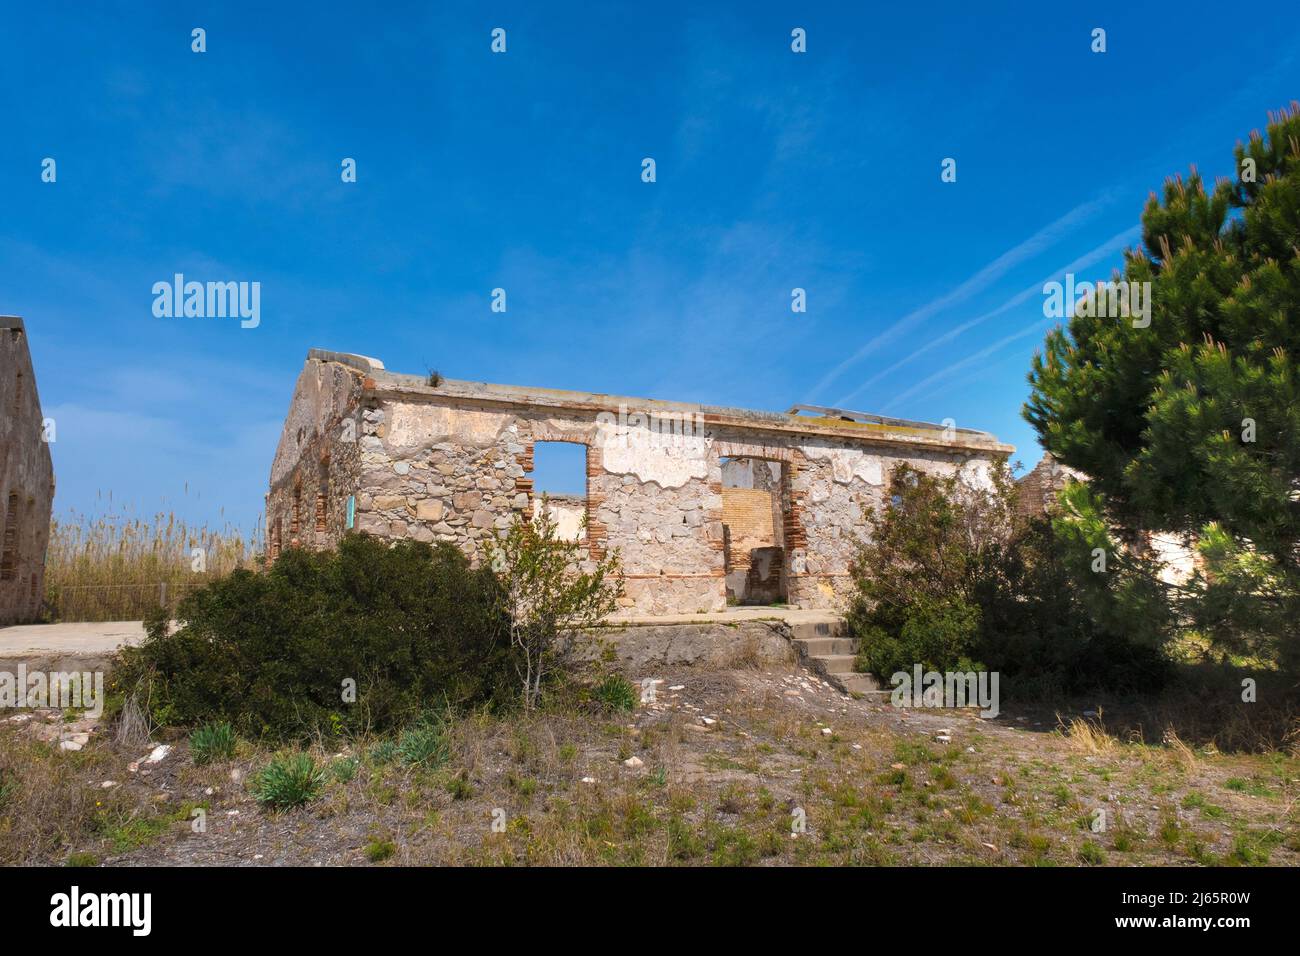 EL PRAT DE LLOBREGAT, APRIL 1st 2022: Remains of the old Carabiners Barracks in El Prat de Llobregat, Spain. Stock Photo